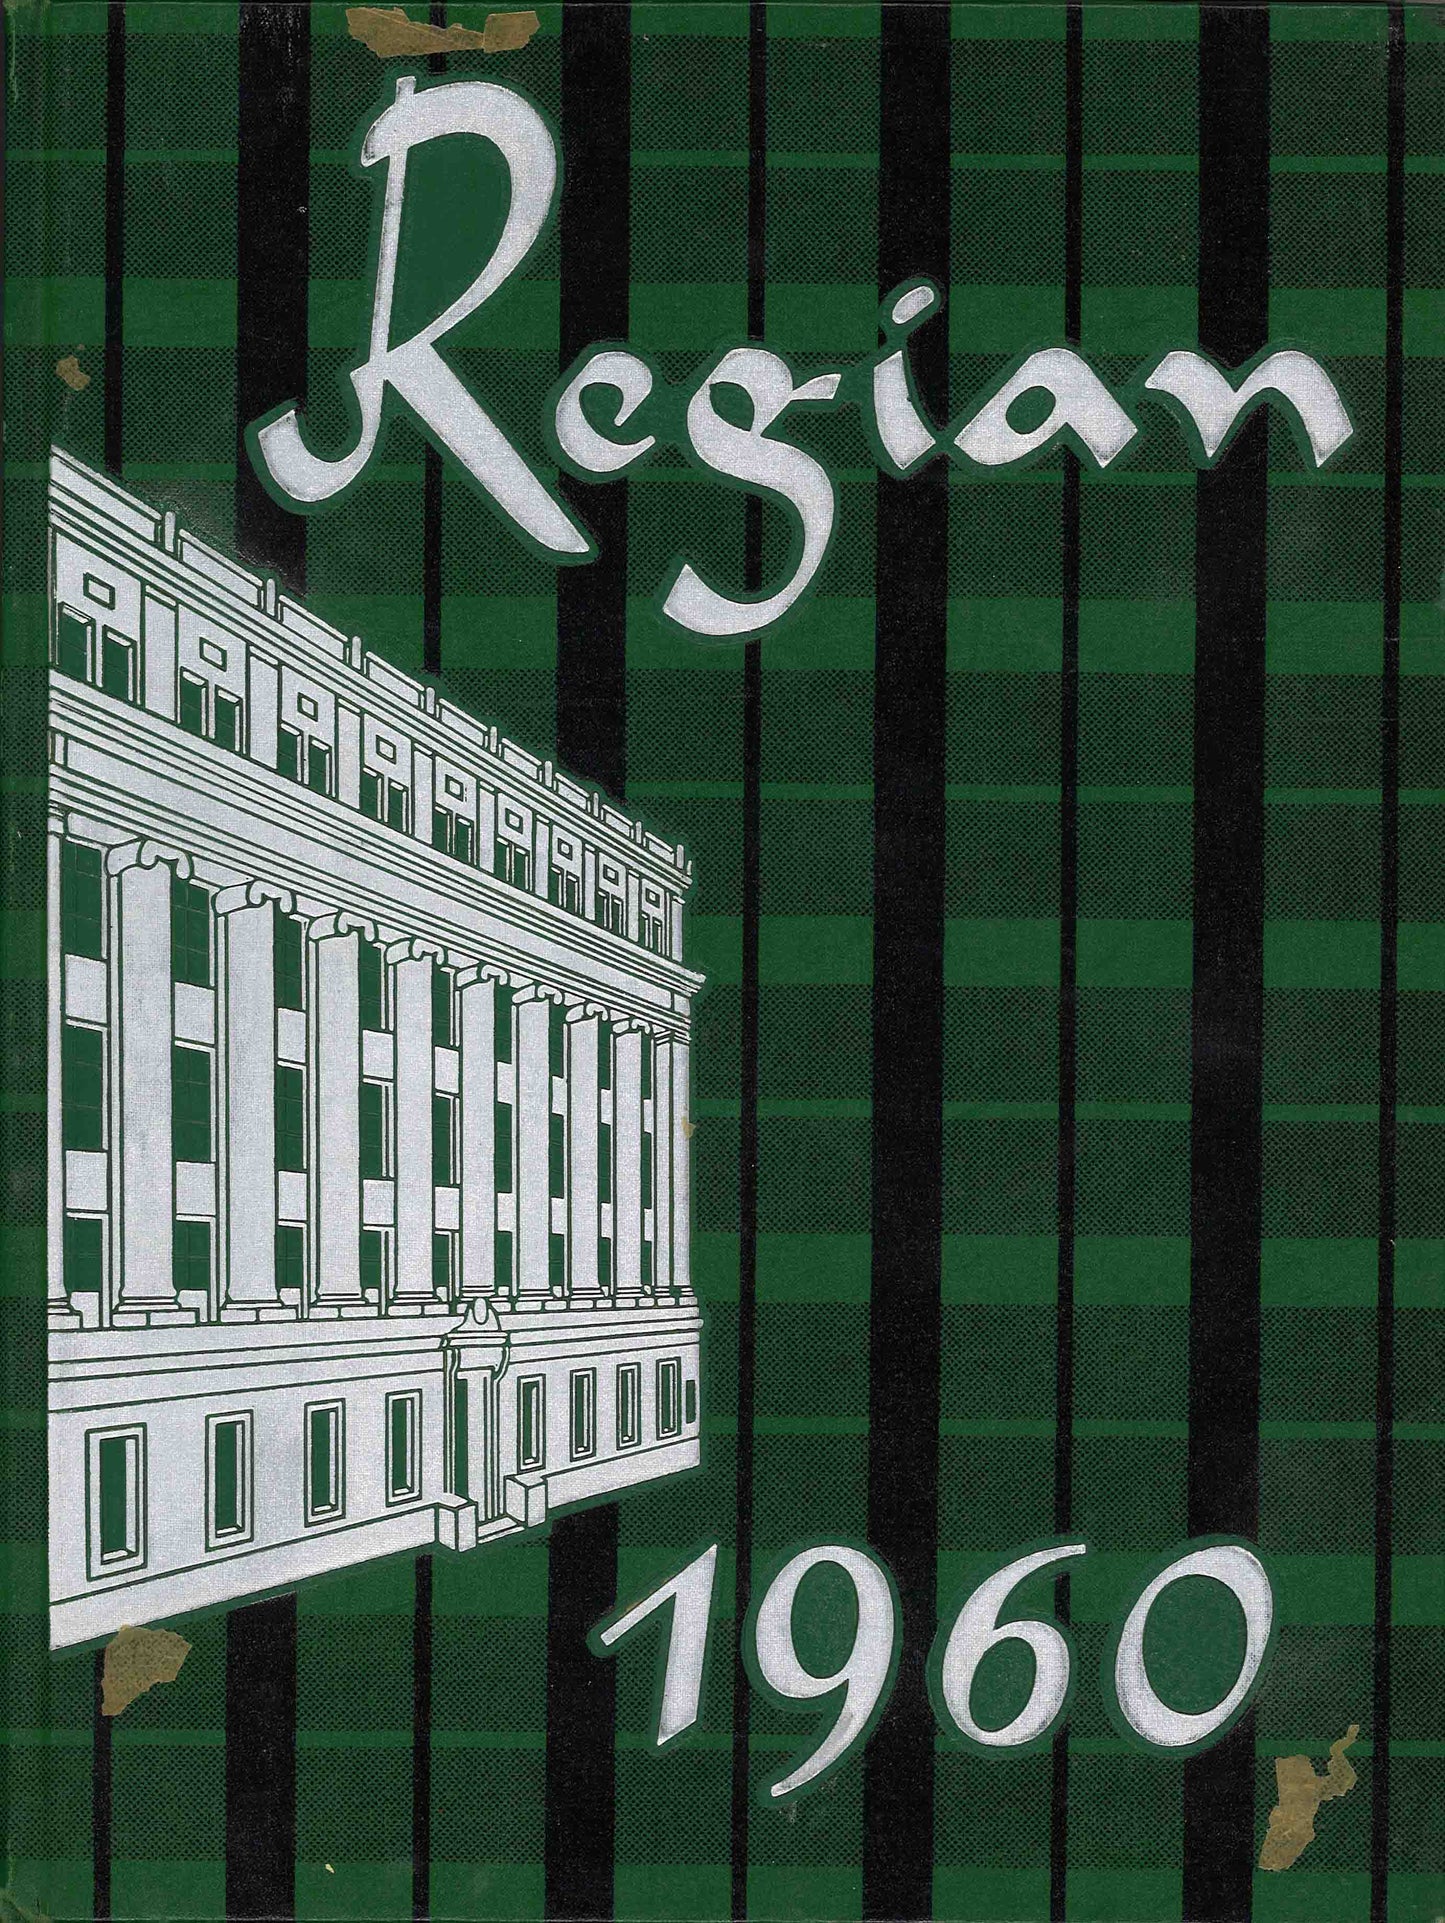 The Regian - 1960